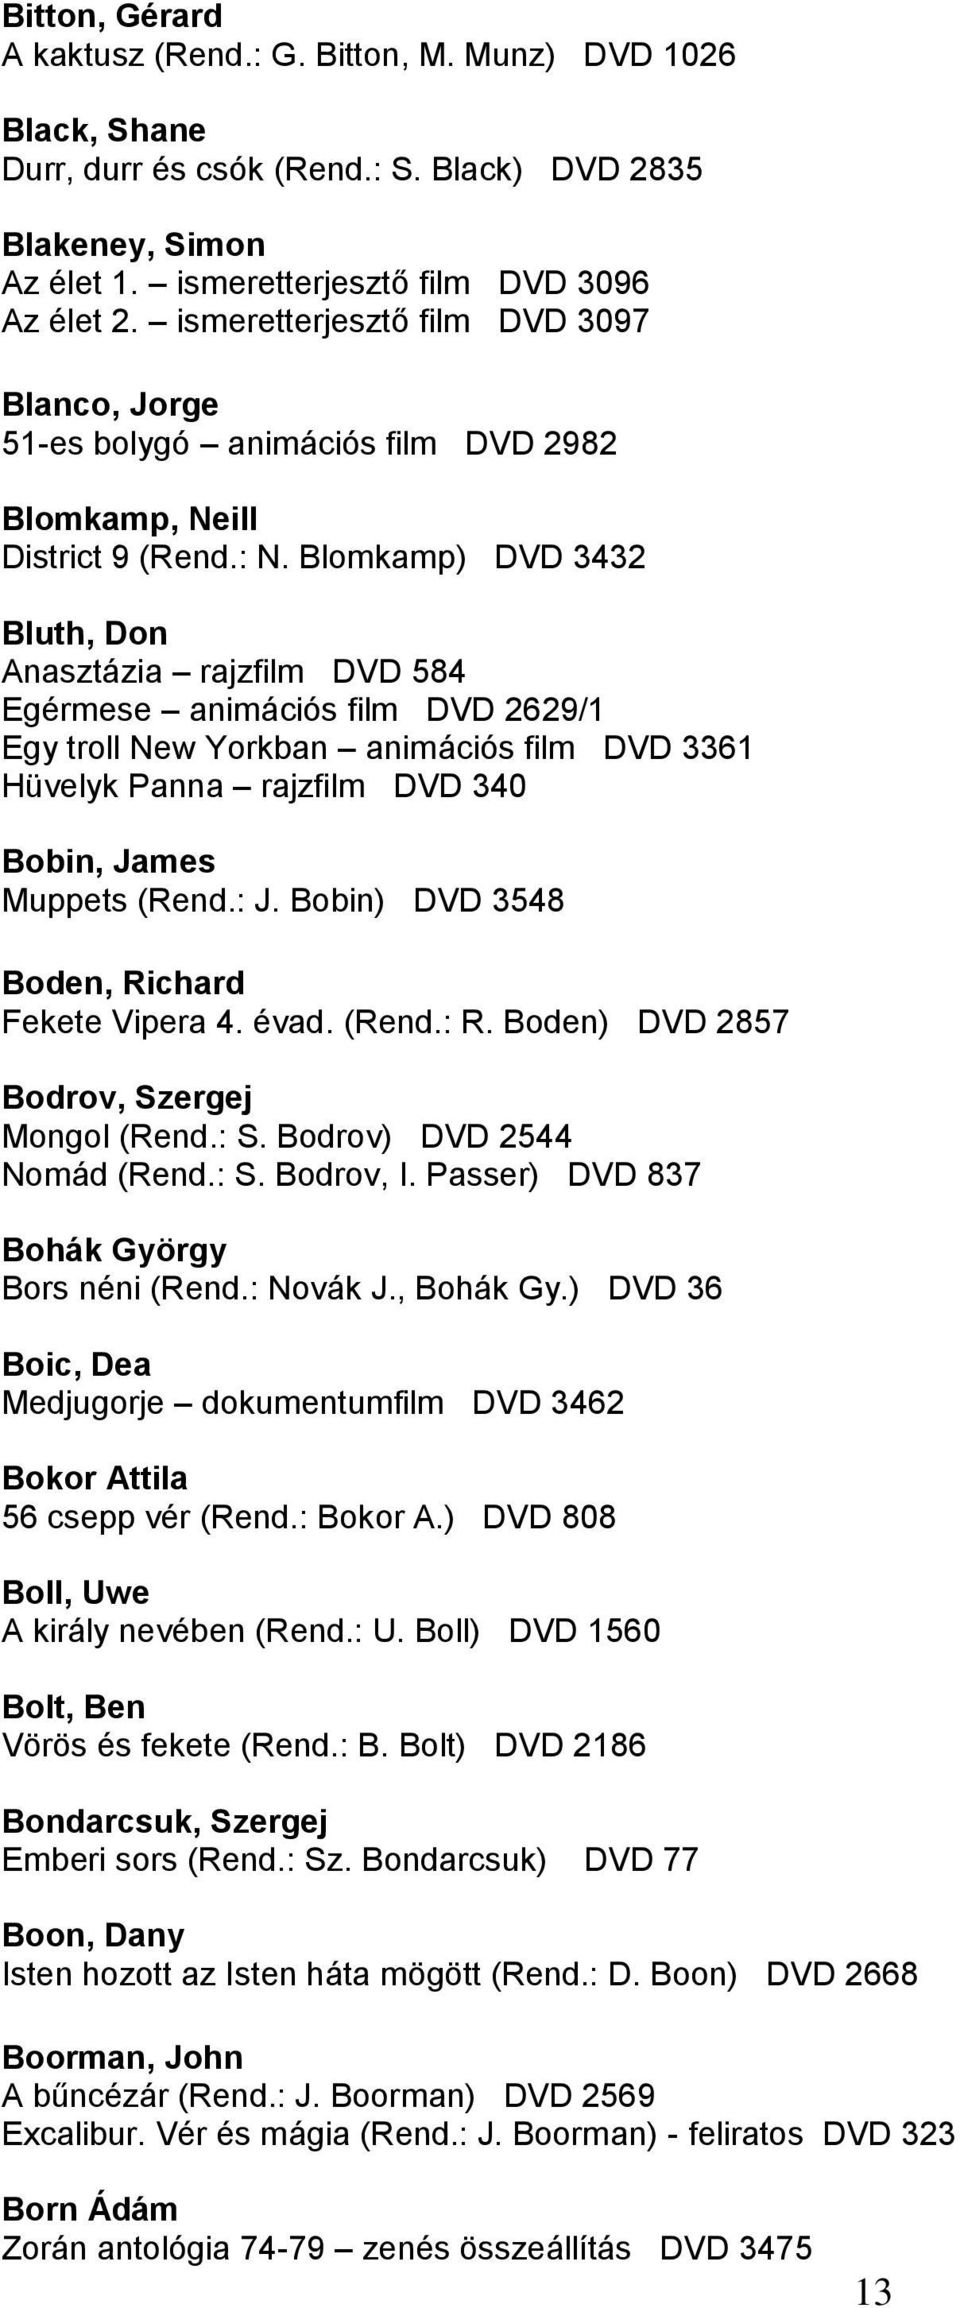 Blomkamp) DVD 3432 Bluth, Don Anasztázia rajzfilm DVD 584 Egérmese animációs film DVD 2629/1 Egy troll New Yorkban animációs film DVD 3361 Hüvelyk Panna rajzfilm DVD 340 Bobin, James Muppets (Rend.